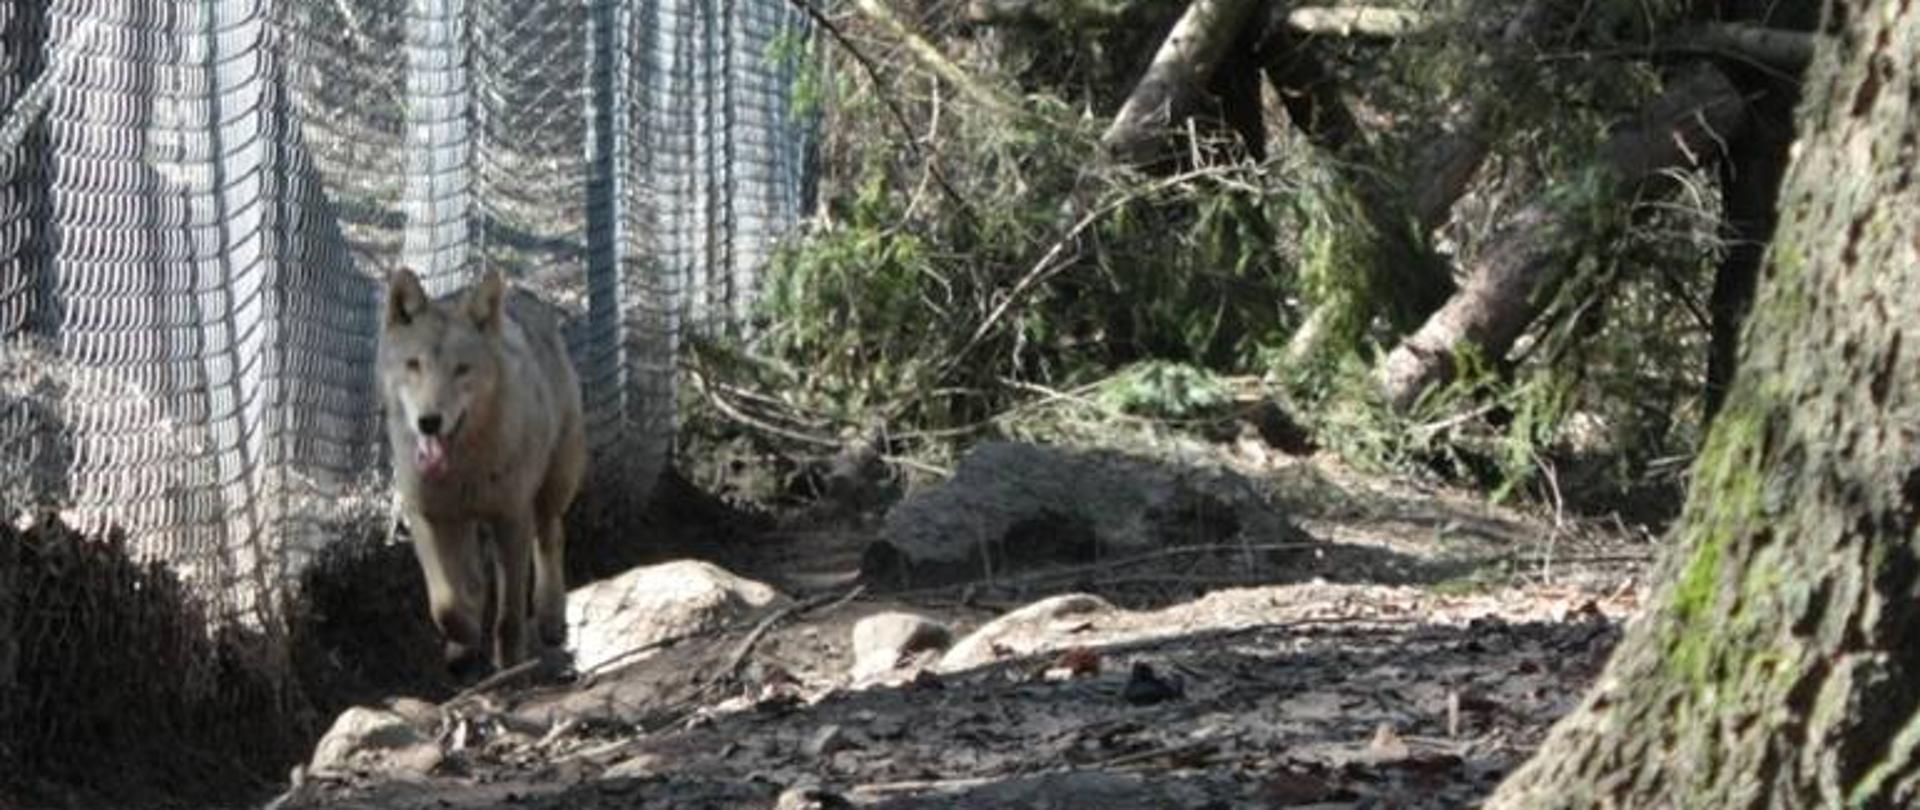 Zdjęcie przedstawia wilka w wolierze na terenie Ośrodka Rehabilitacji Zwierząt Napromek, prowadzonego przez Nadleśnictwo Olsztynek